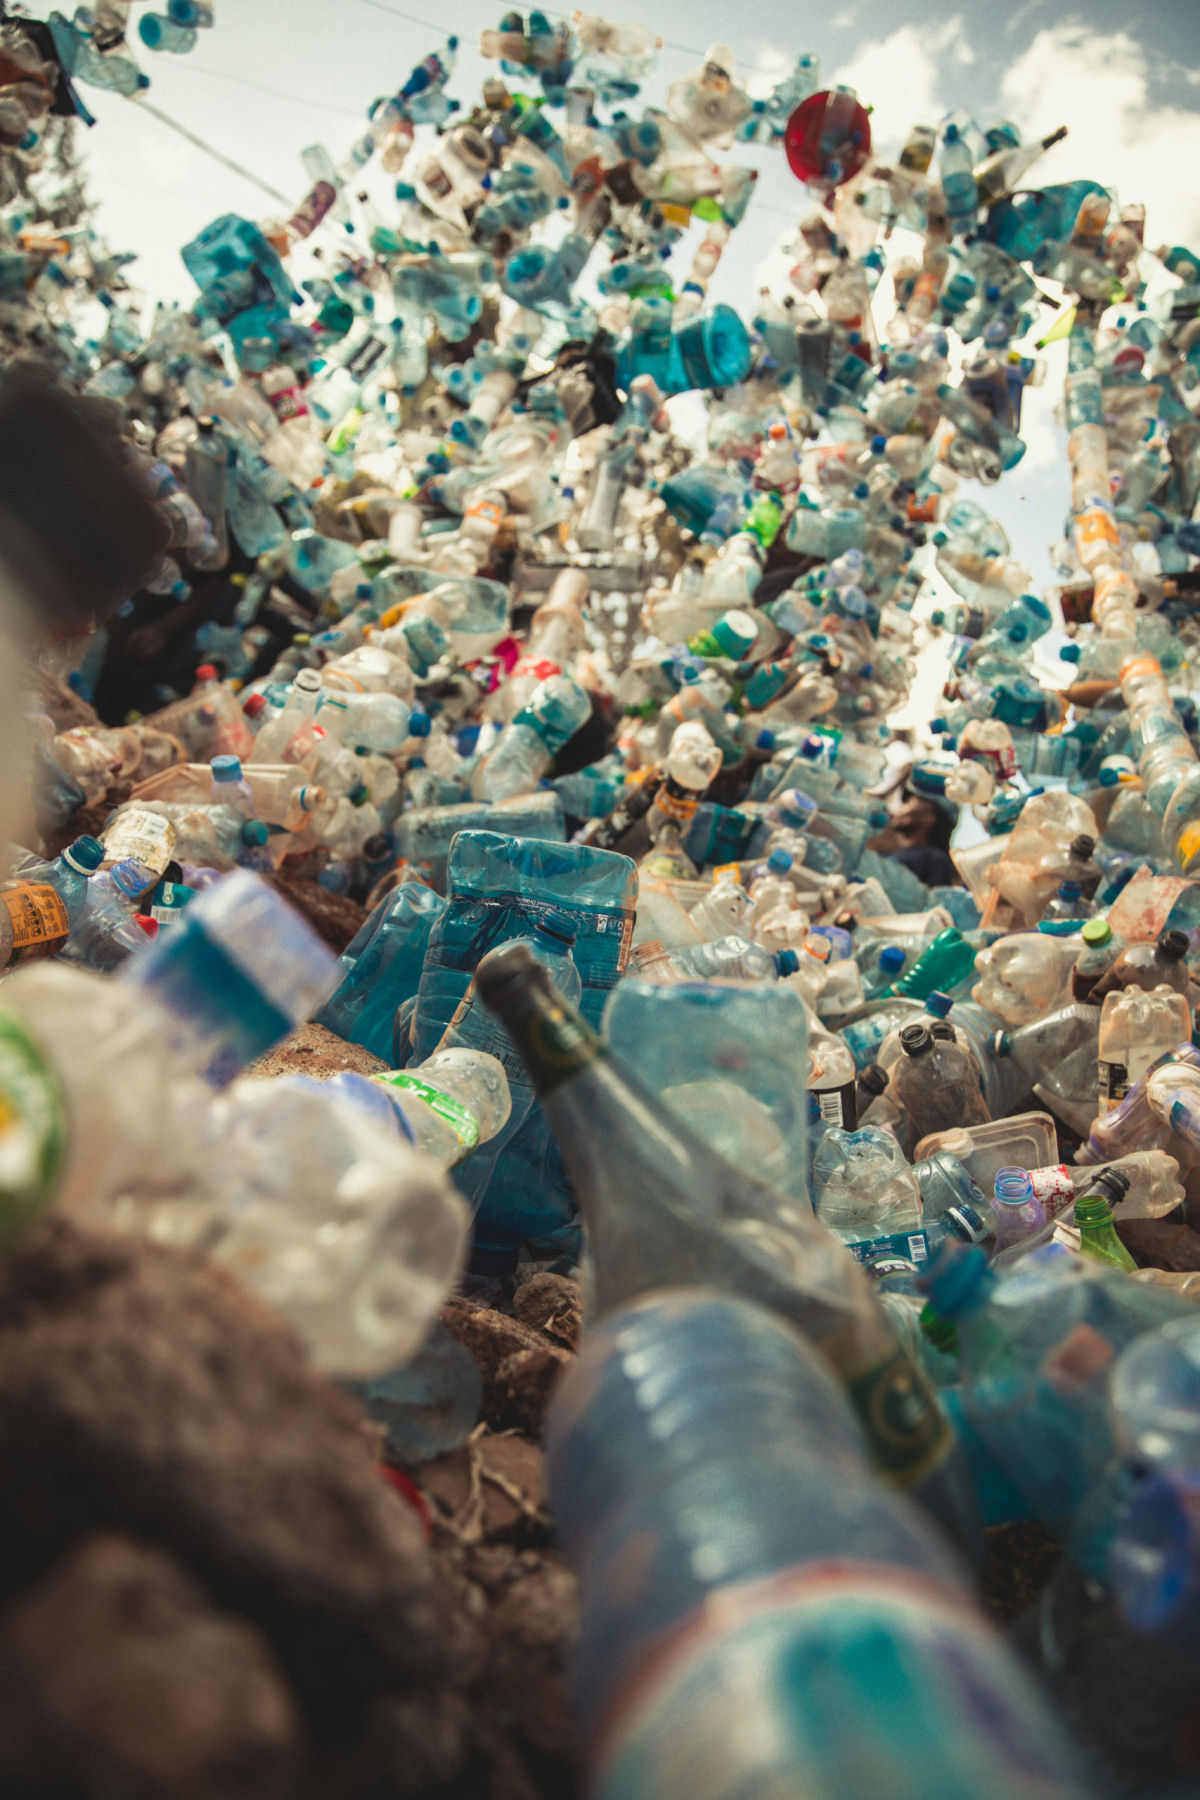 'Desligue a torneira de plástico': 3 toneladas de resíduos derramam de uma torneira flutuante